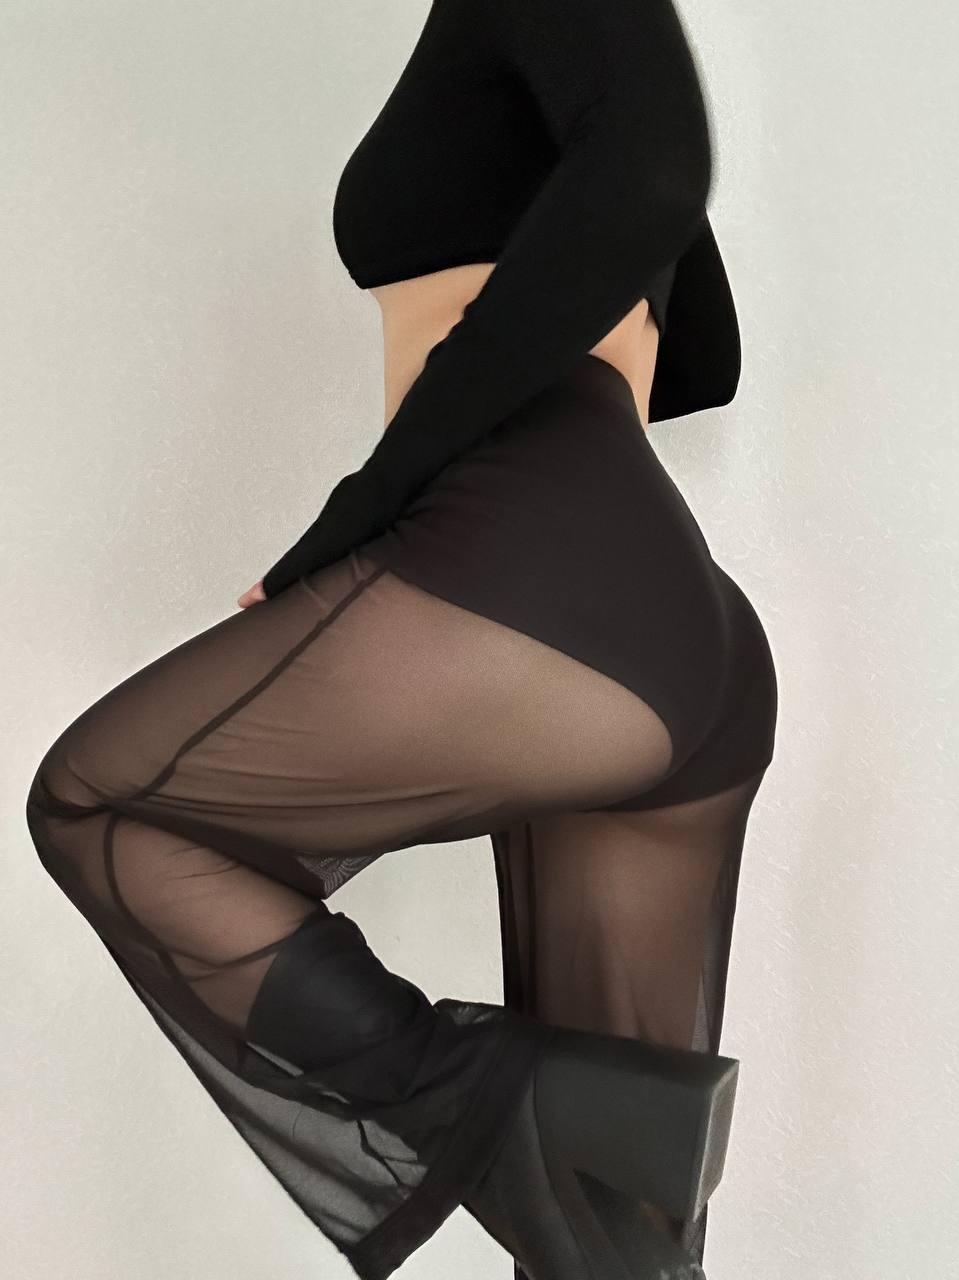 Жіночі ошатні креативні штани, 42-46, чорний, сітка стрейч, мікродавінг.